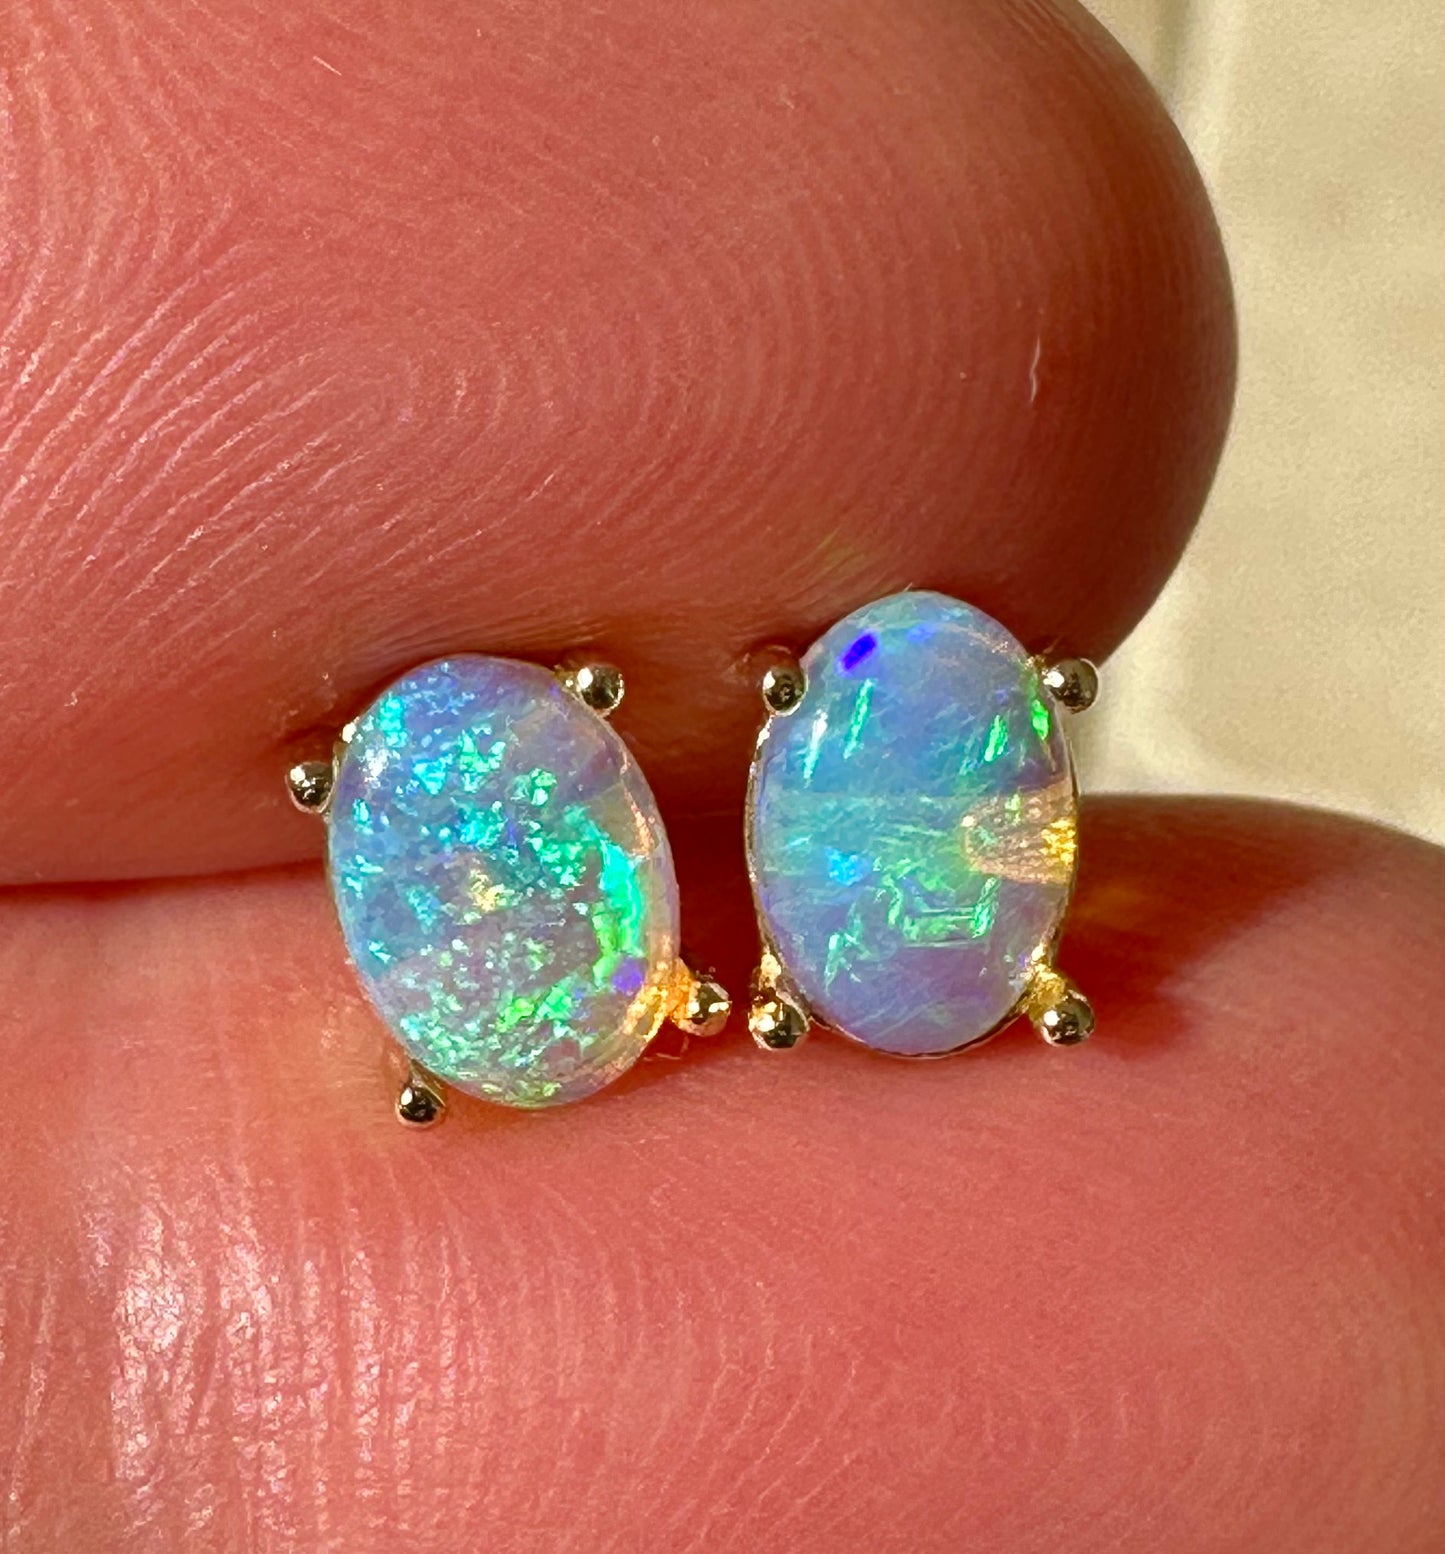 Crystal opal stud earrings set in 14k yellow gold